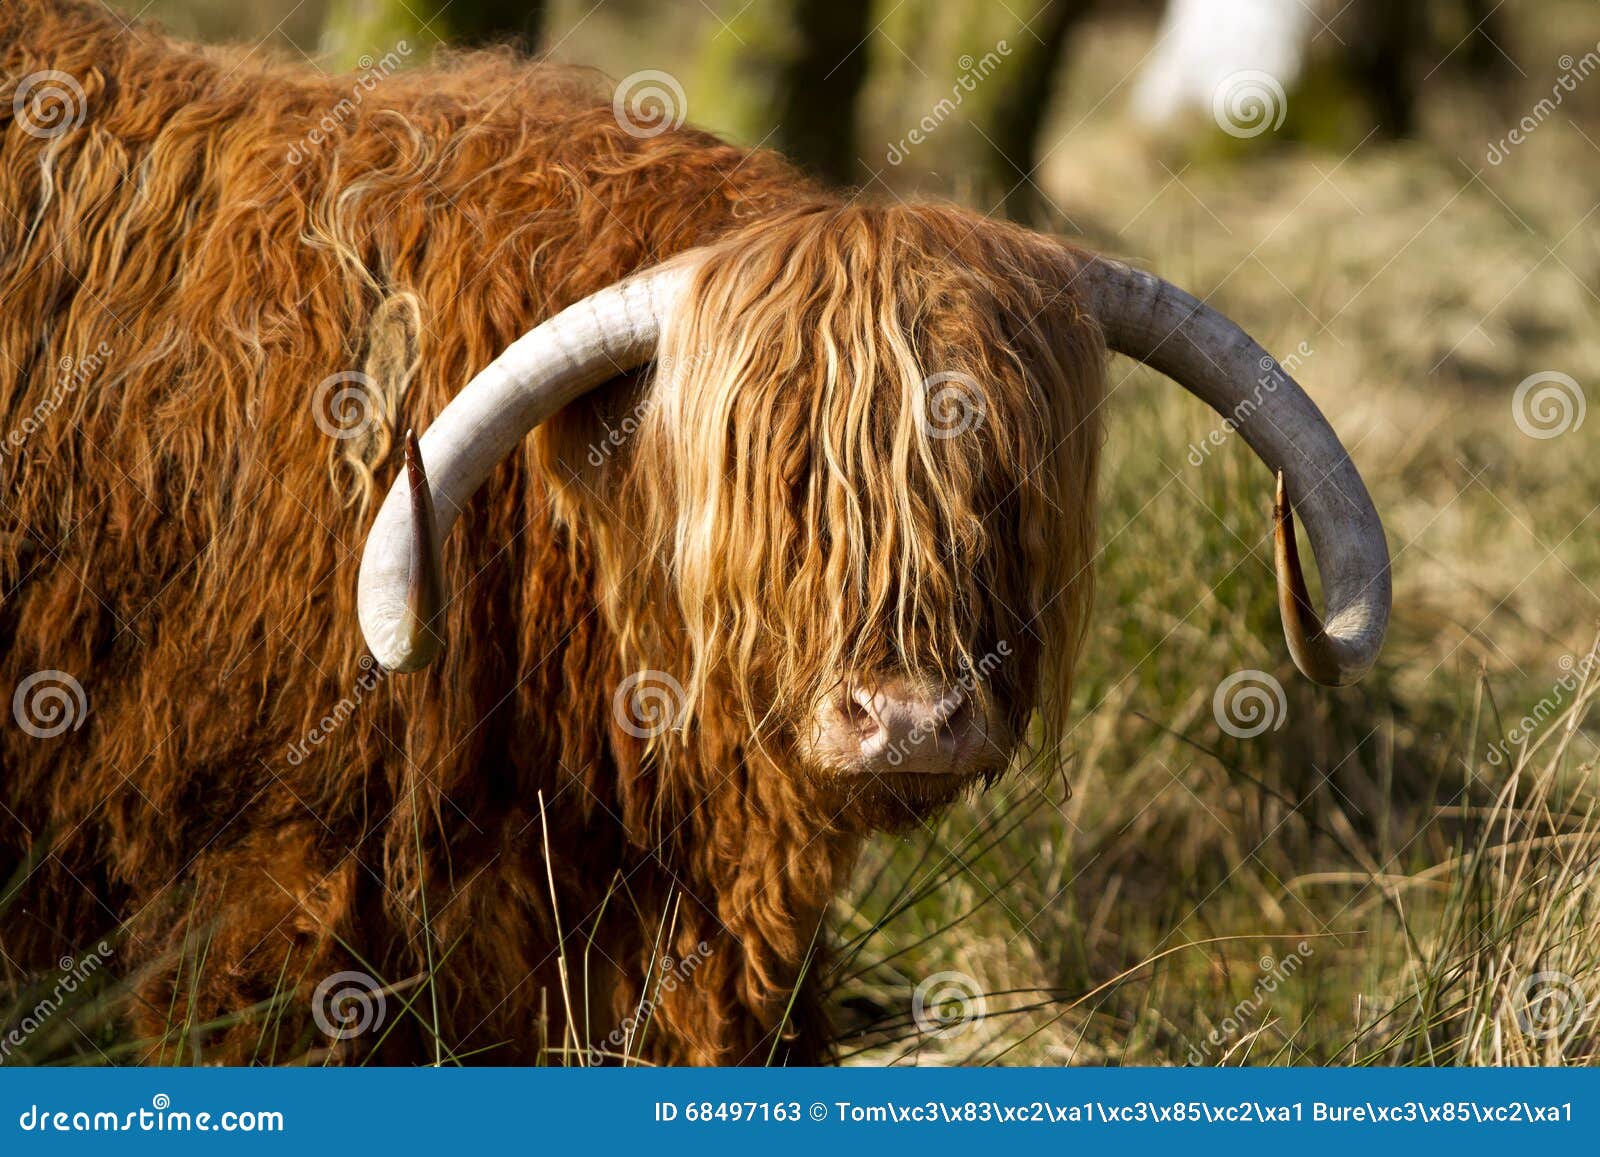 scottish highlander ox